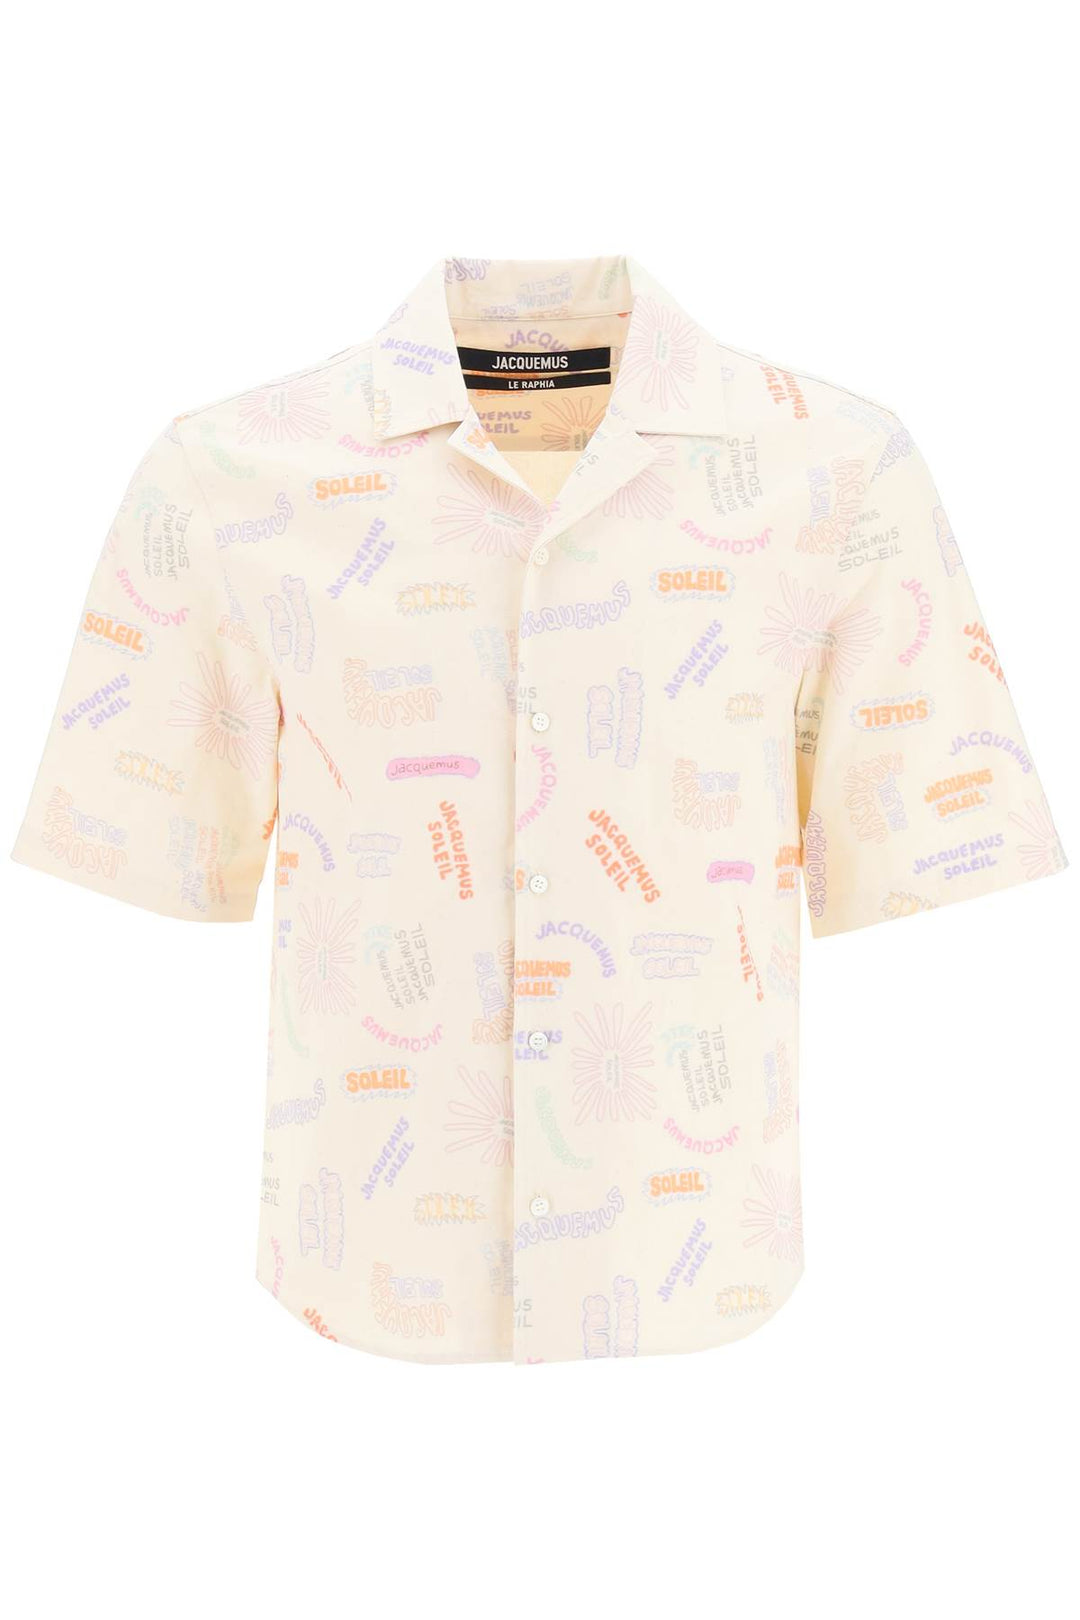 Jacquemus 'La Chemise Aouro' Shirt   Beige